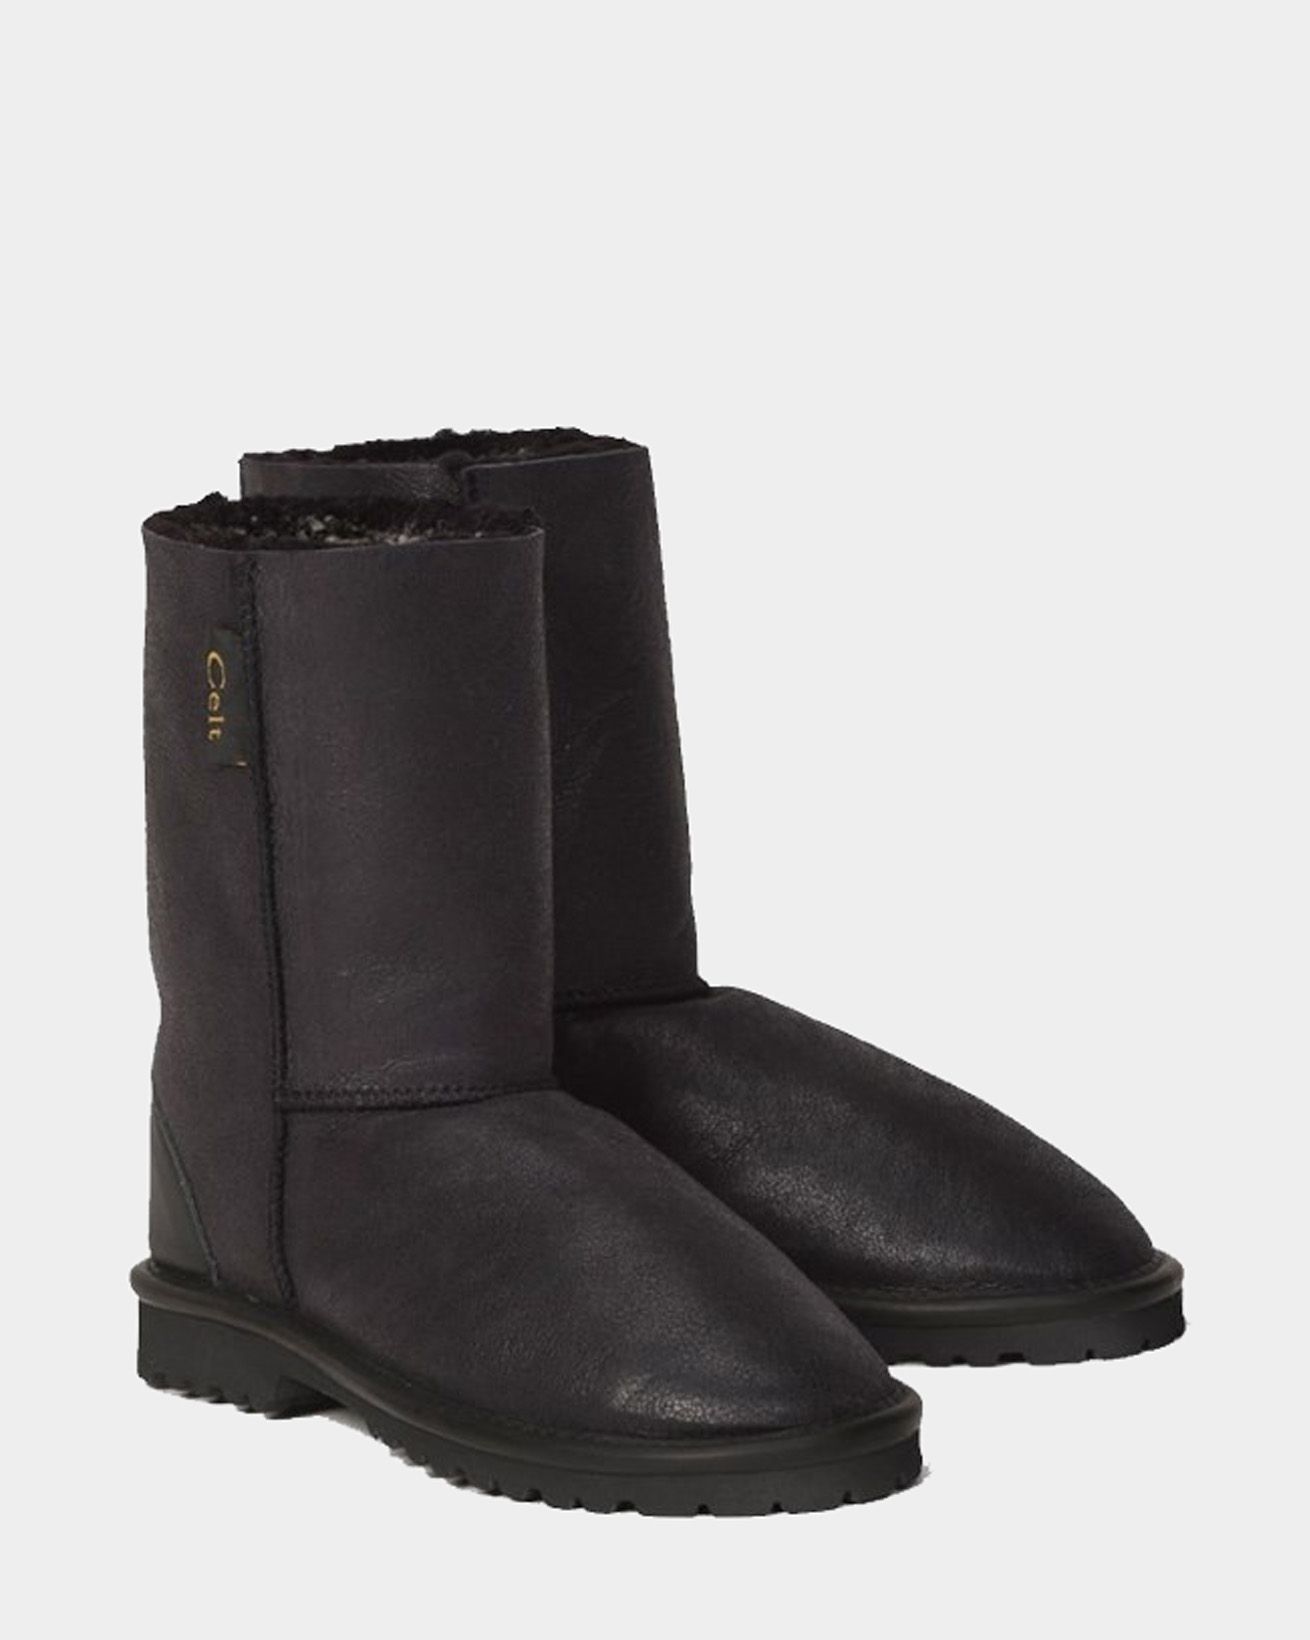 6606-mens-celt-regular-sheepskin-boots-distressed-black-cutout-1.jpg